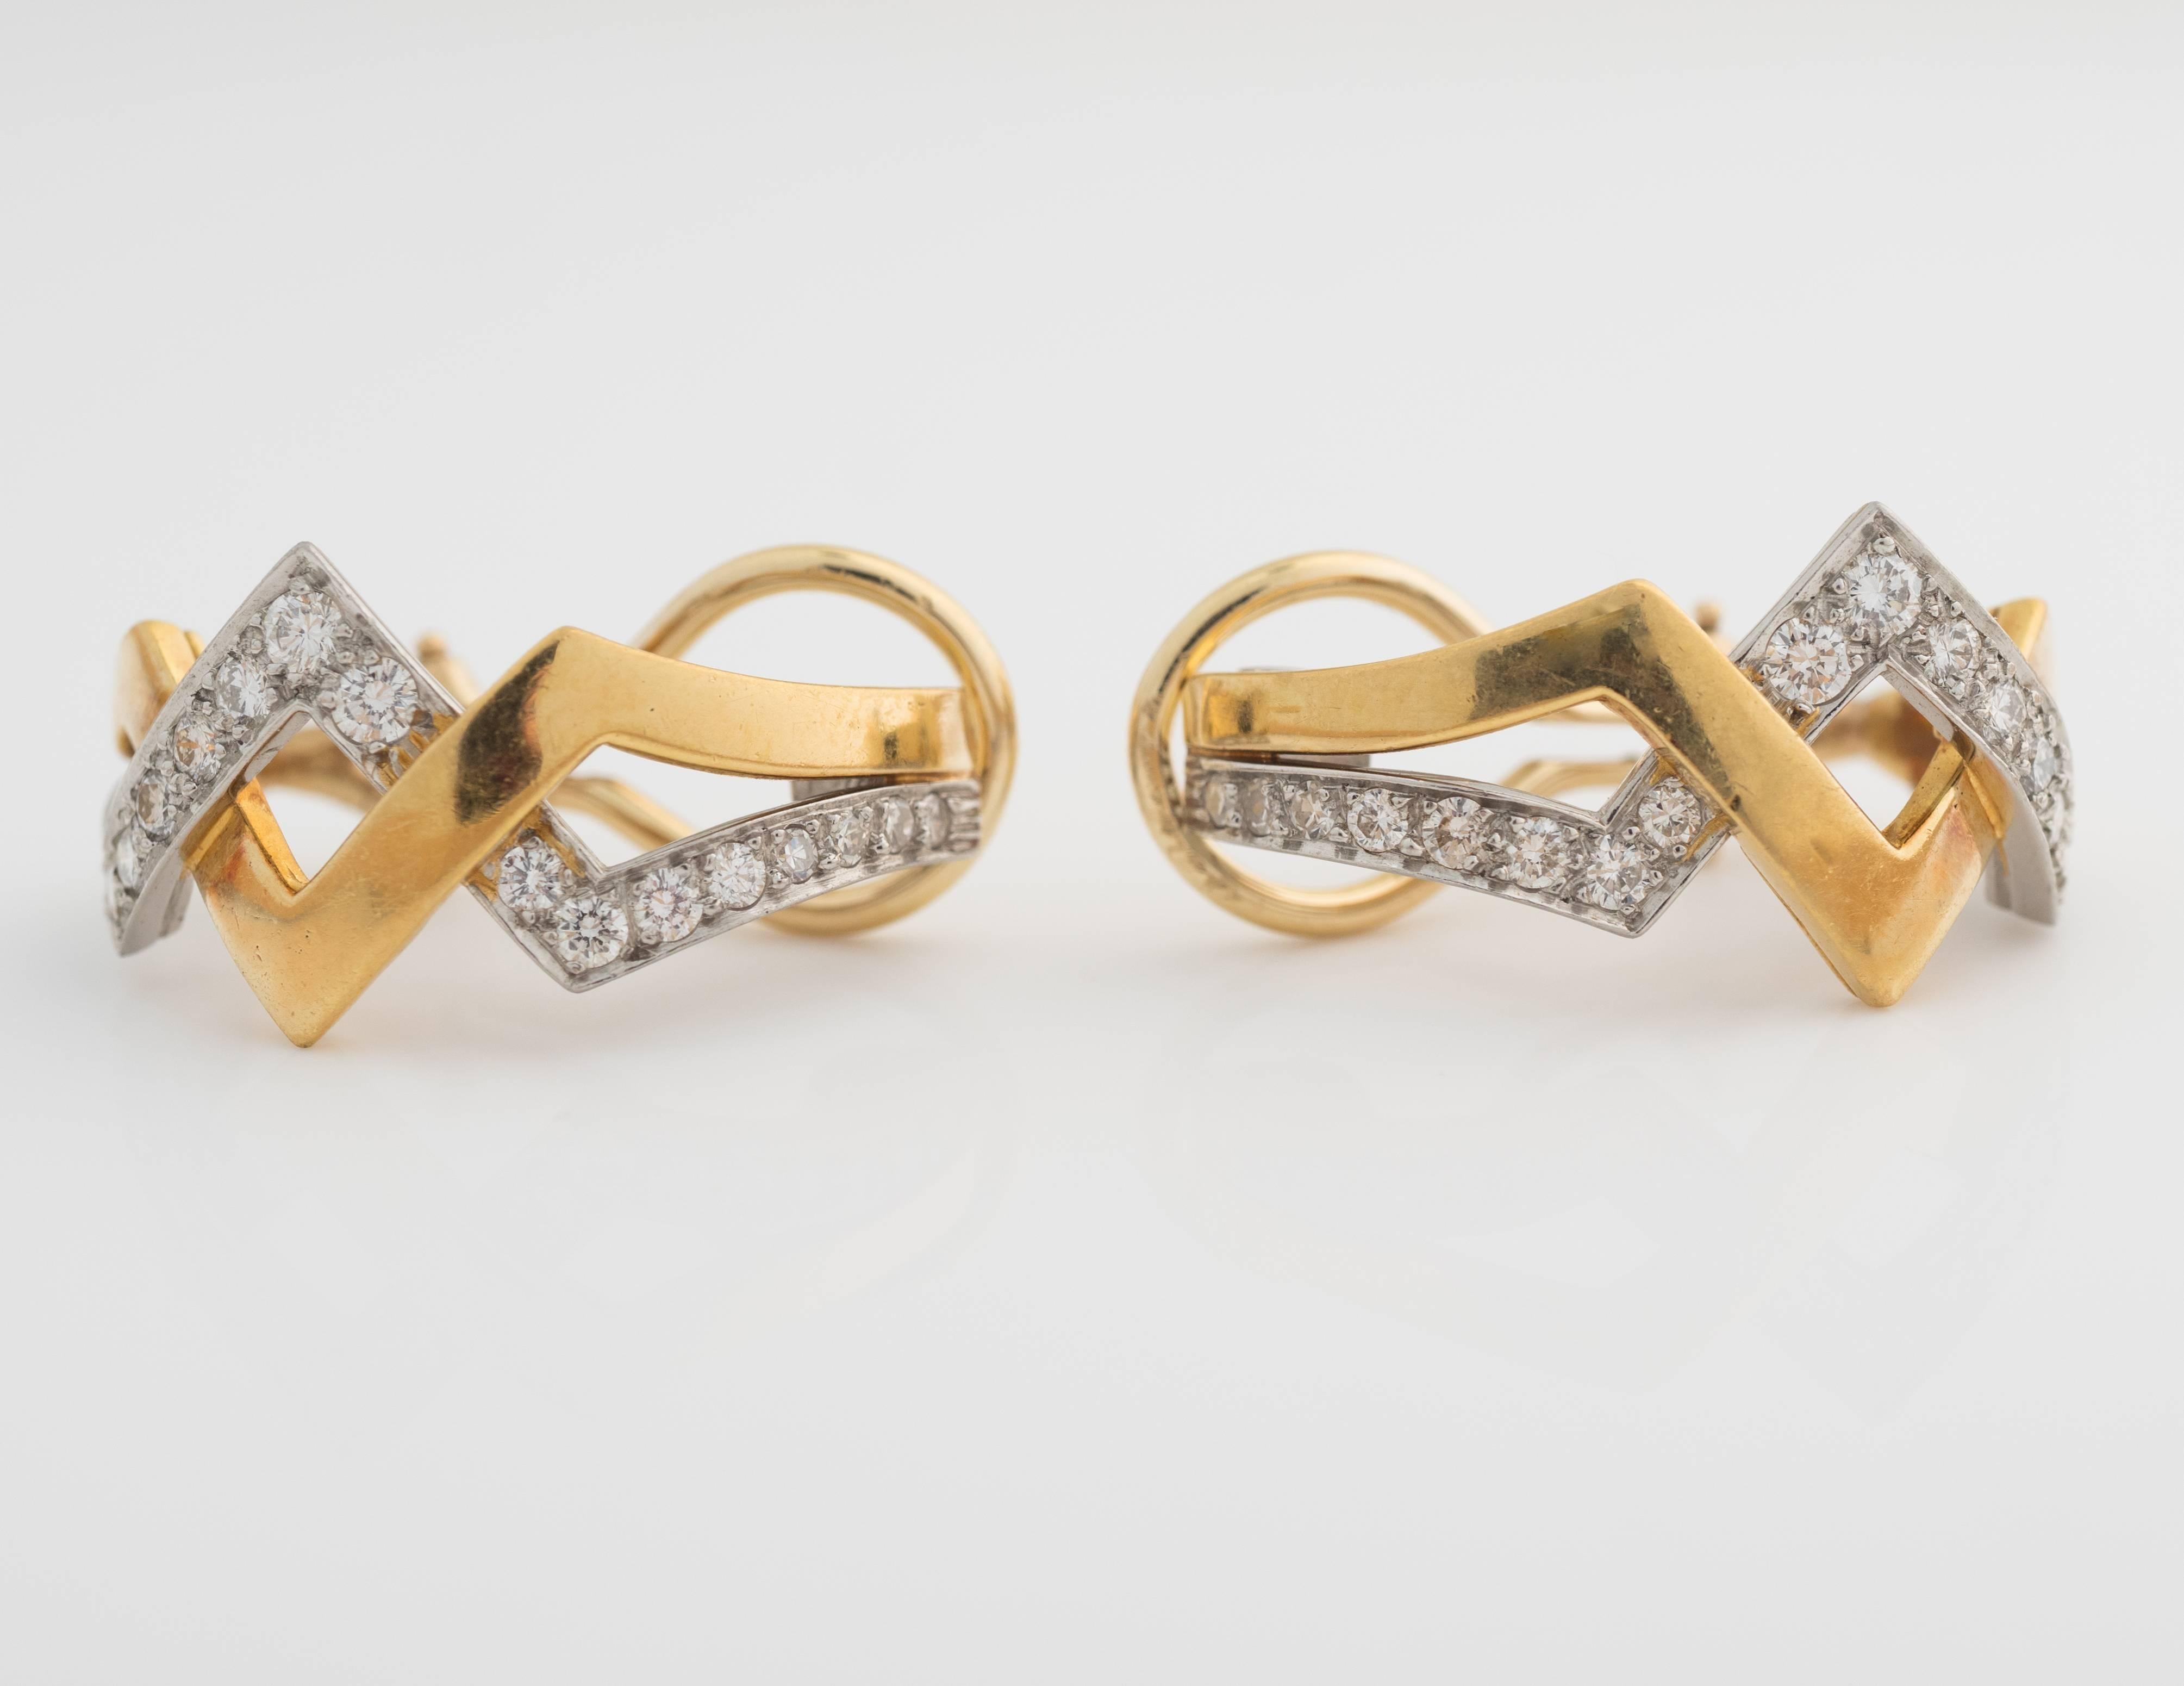 1960er-Jahre-Diamantohrringe aus 2-farbigem Mischmetall, Platin und 18-karätigem Gold. Die Diamanten haben ein Gesamtgewicht von 1 Karat und sind von der Farbe F und der Reinheit VS. Die Diamanten sind in Platin gefasst und verflechten sich mit